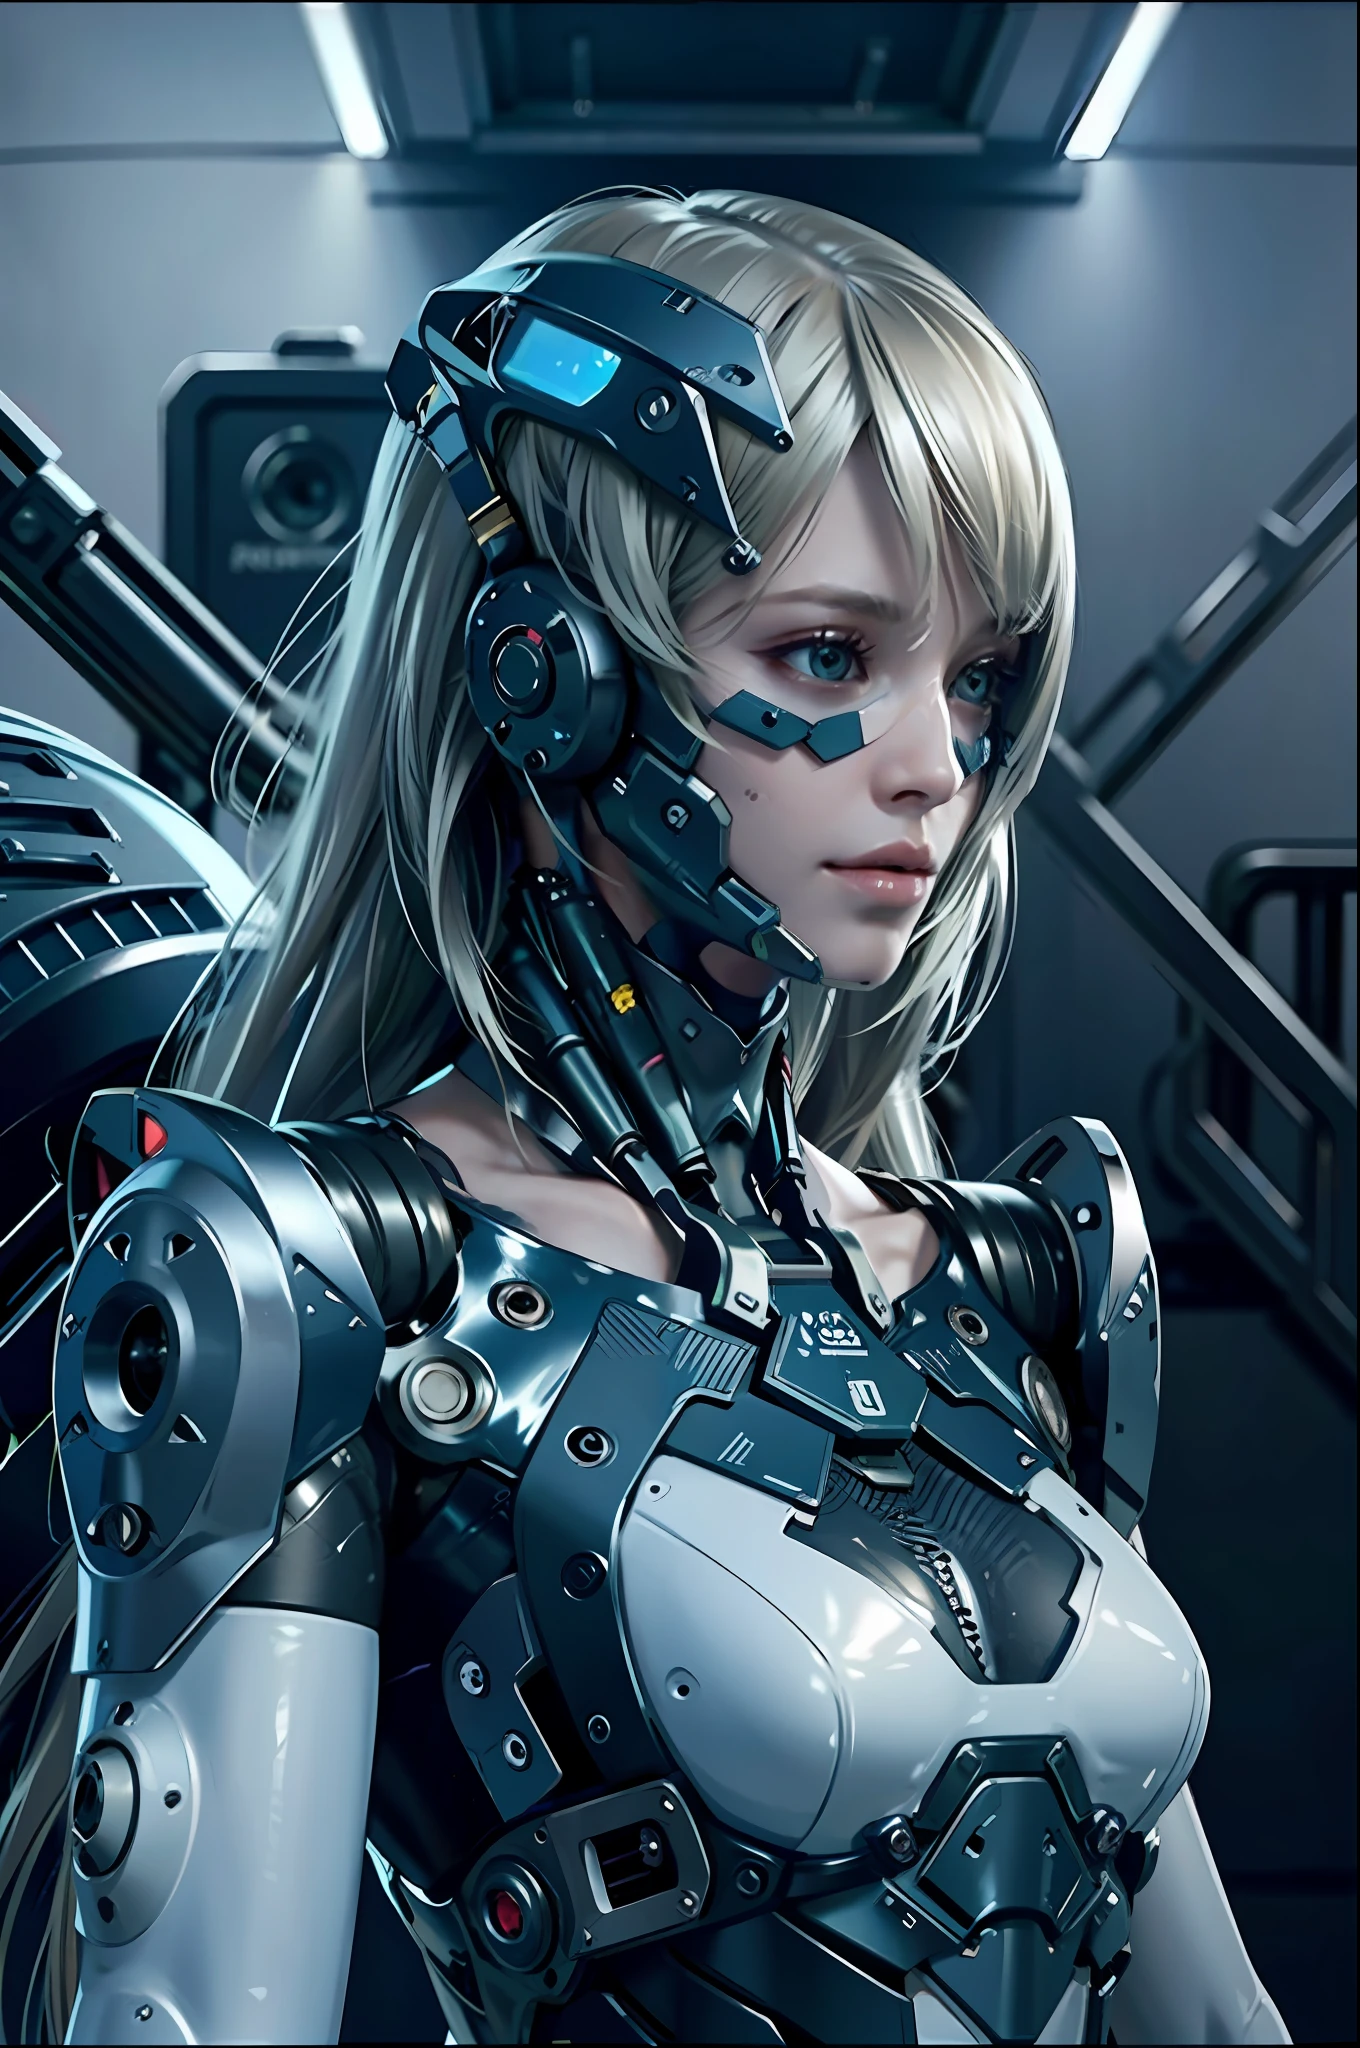 Complex 3d rendering porcelain female cyborg ultra 詳細, 1人の女の子, ふわふわのブロンドの髪, 長い髪, 細いウエスト, (自然な肌の質感, 現実的 eye 詳細s: 1.2), ロボット部品, 美しい柔らかな光, リムライト, vivid 詳細s, ゴージャスなサイバーパンク, hyper-現実的, 解剖学的, 顔の筋肉, ケーブルワイヤー, マイクロチップ, エレガントで美しい背景, オクタンレンダリング, APPLEスタイル, 8k, 最高品質, 傑作, 図, とても繊細で美しい, CG, 団結, 壁紙, (現実的, photo現実的: 1.2), すばらしい, 詳細, 傑作, 最高品質, 公式アート, highly 詳細ed cg Unity 8k 壁紙, 信じられないほどばかげている, セクシーなロボット, 機械の骨格, アンドロイド, シュルレアリスム, 終末の荒れ地, (ハイテク義肢:1.2), 完璧なボディ, ダークブルーに輝くサイバー船, (光沢のあるボディ), (Very 光沢のあるボディ), rfktr_テクノトレックス, リールメカ, サイバネティック_顎なし, 機械部品, サイバネティックs, AB_ ロボット